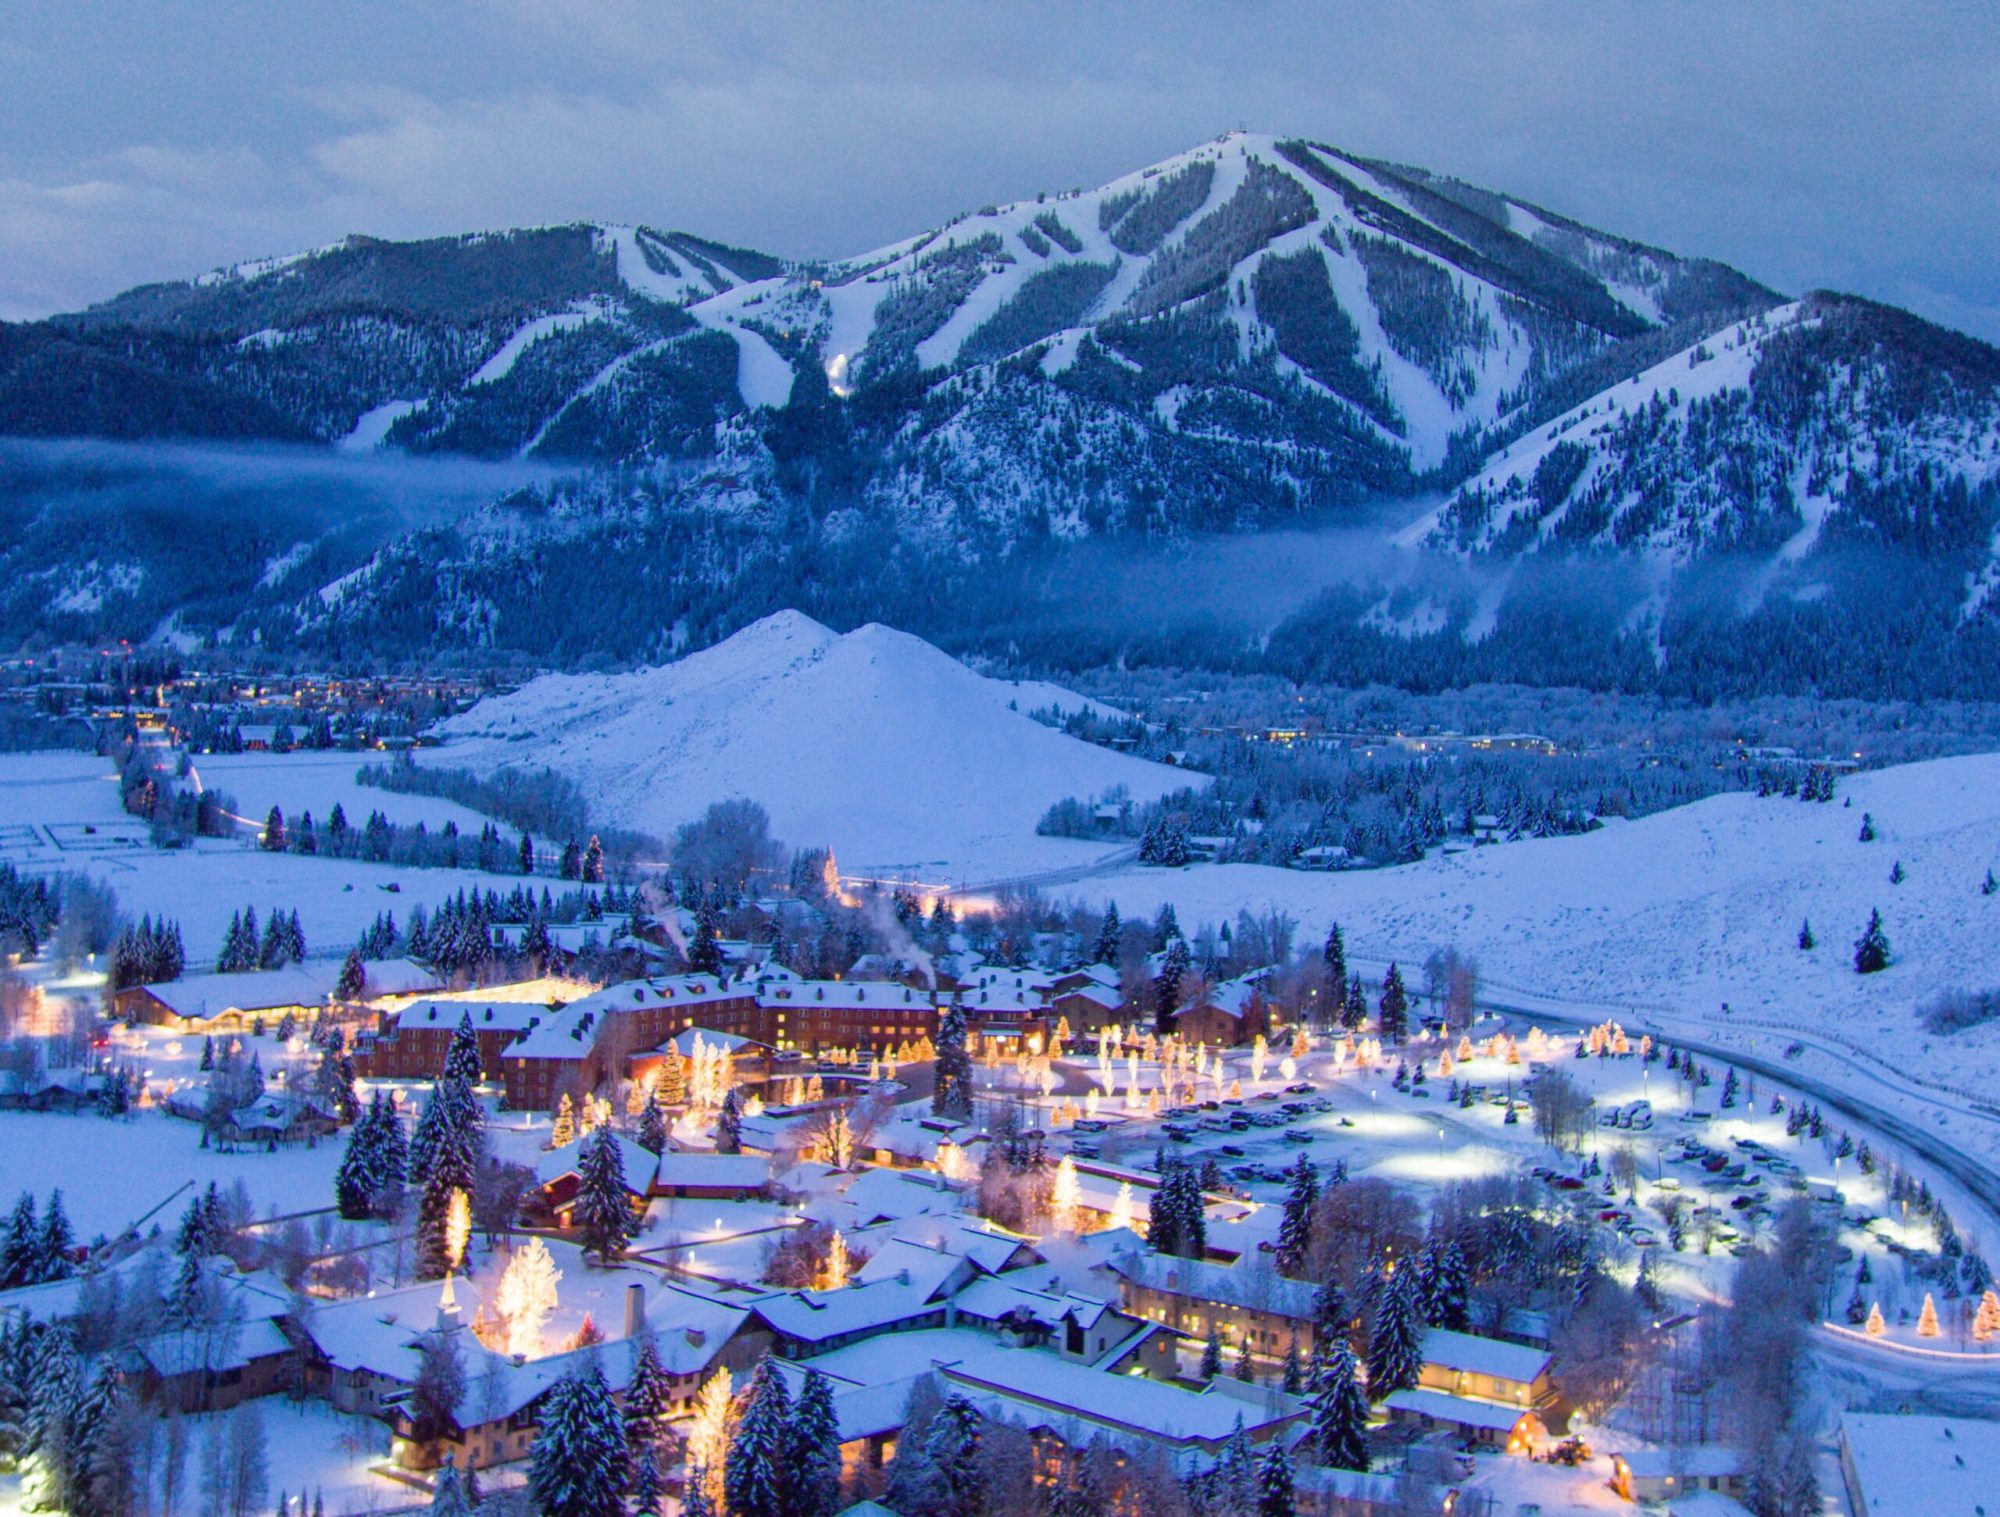 aeriel view of Sun Valley ski resort during winter